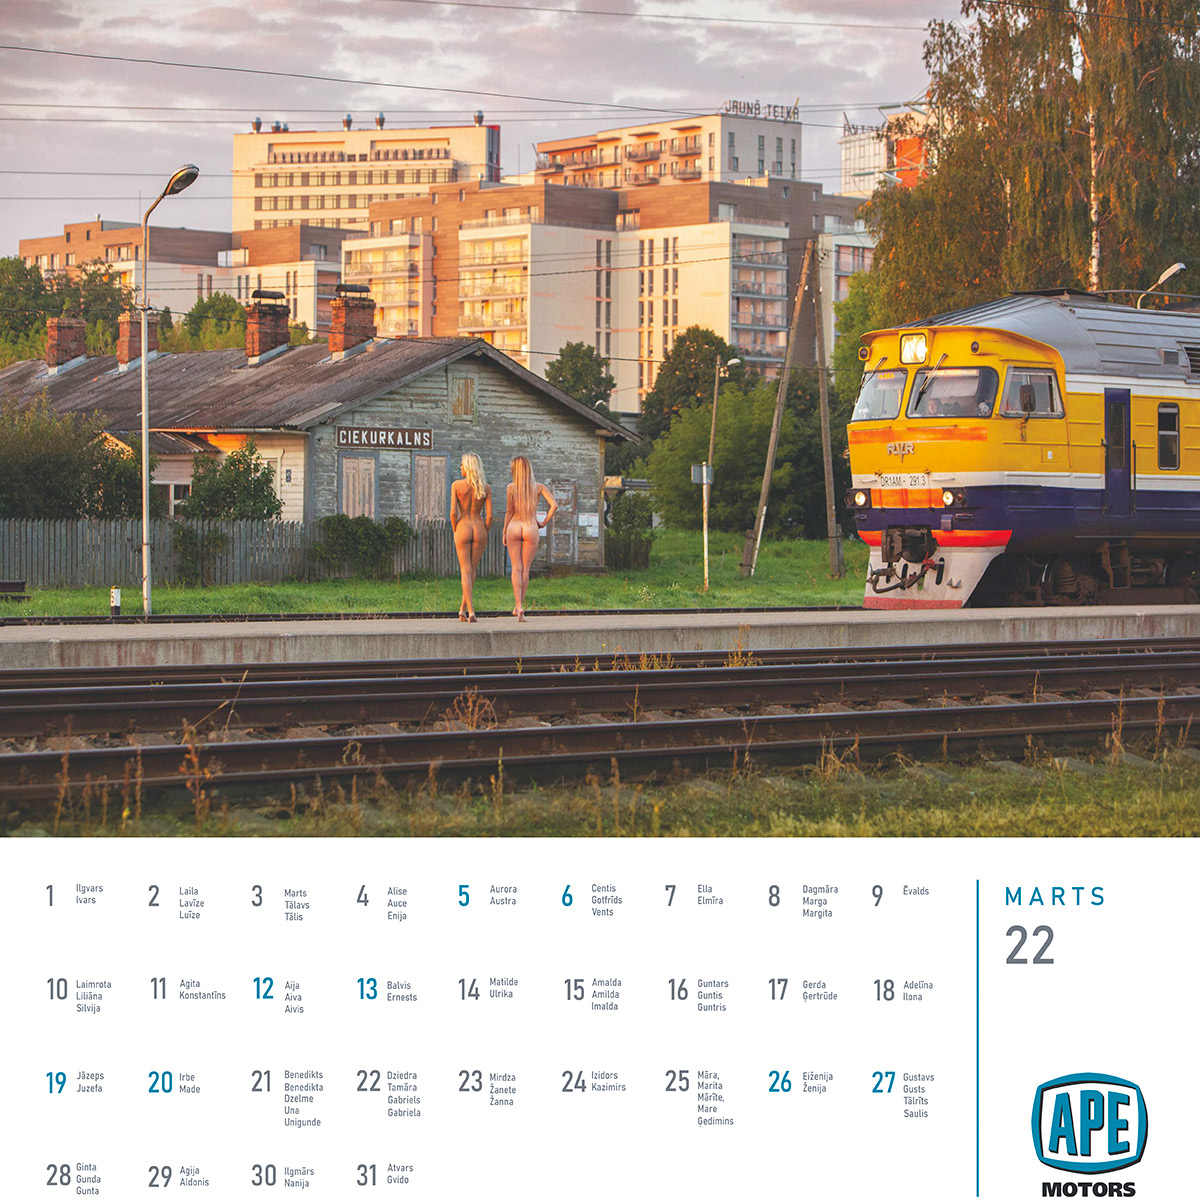 Mārtiņš Plūme | Erotisks kalendārs 2022 gadam (lielais kalendārs) APE Motors | Foto Martins Plume kailfoto kalendars nude calendar 4